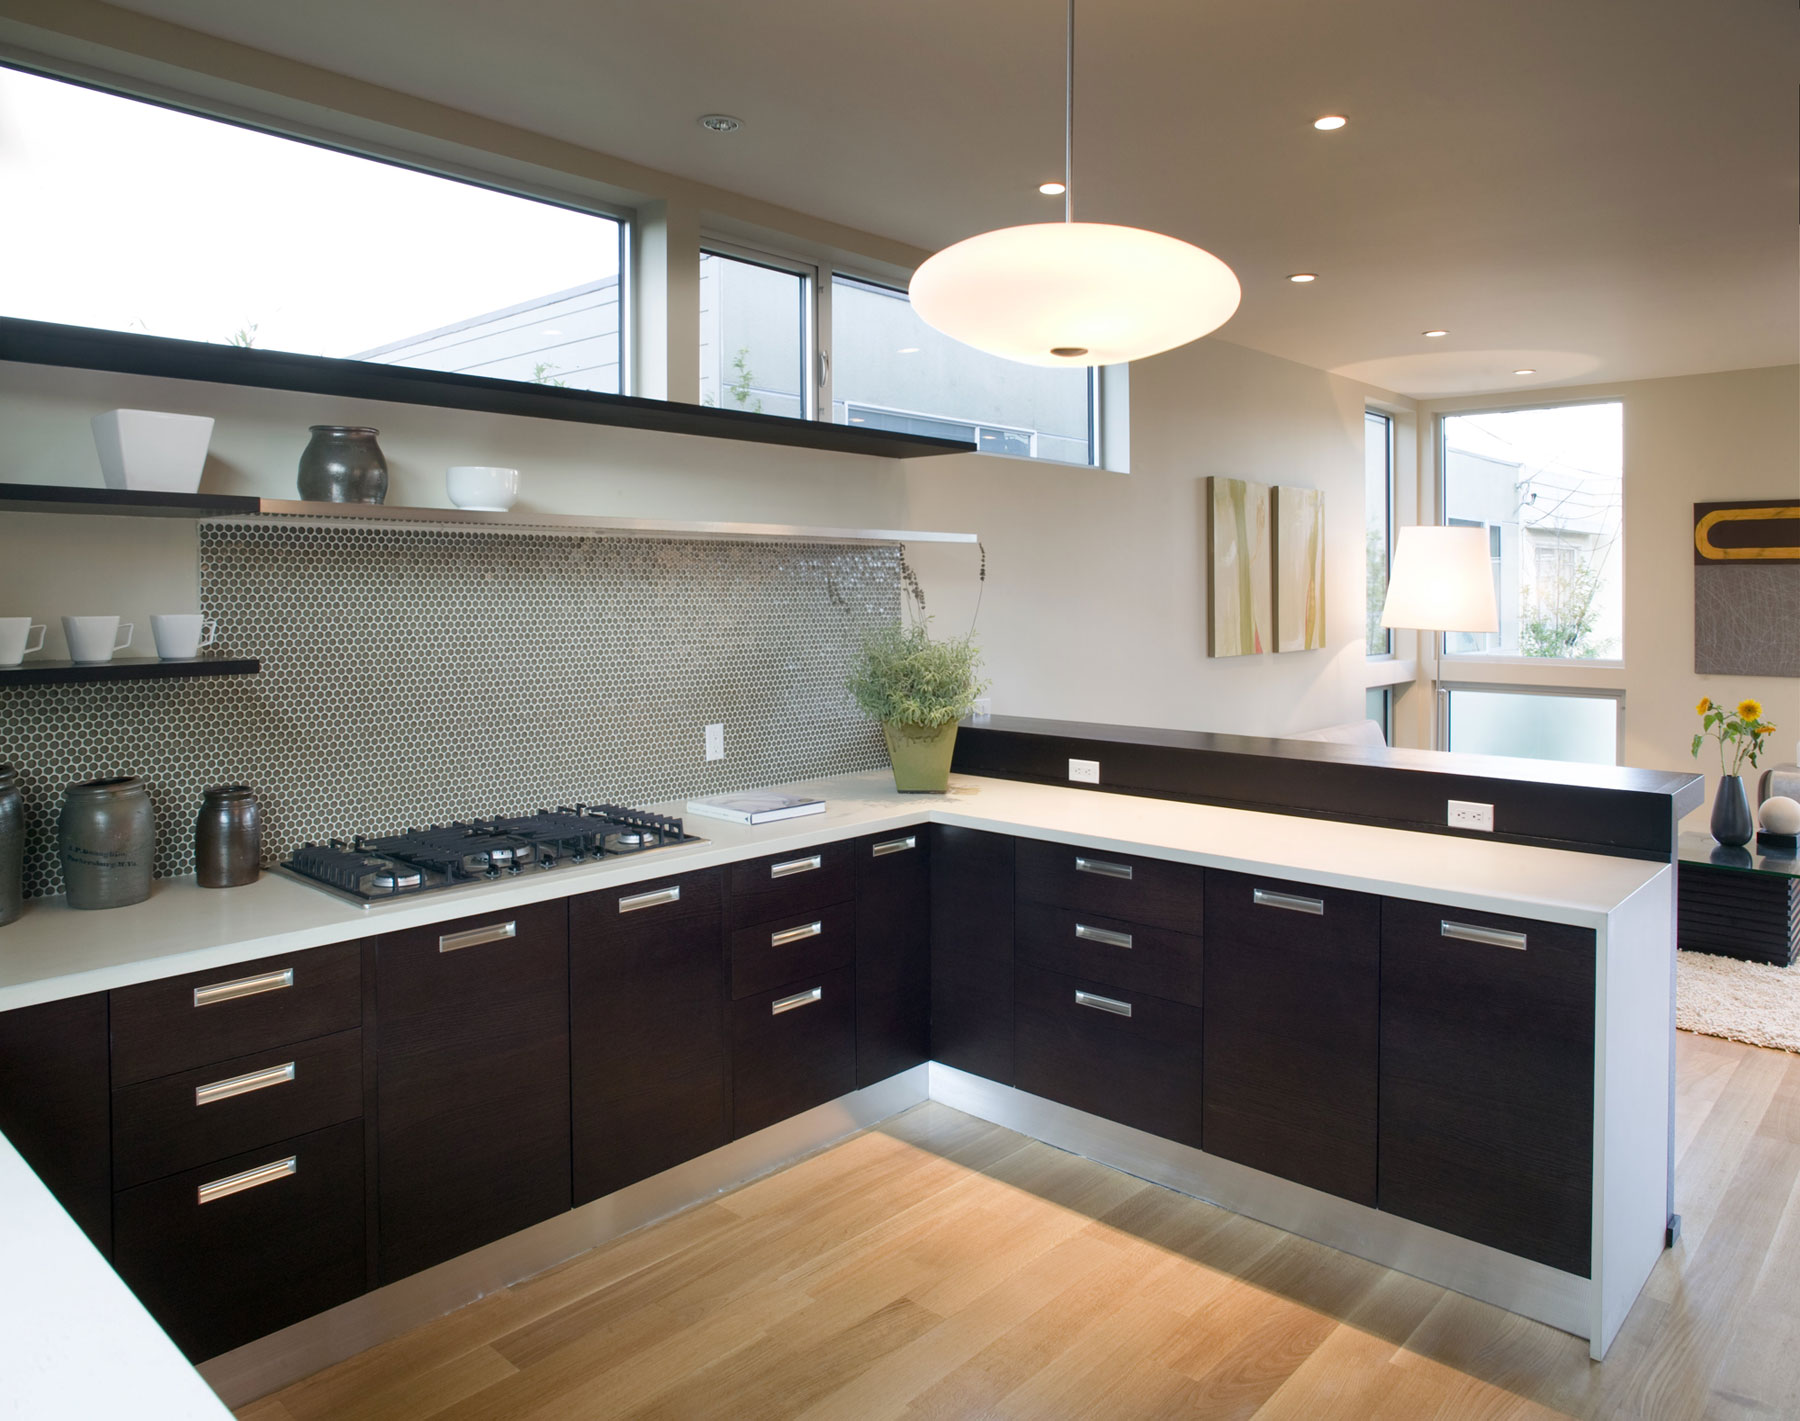 kitchen interior design without upper cupboards